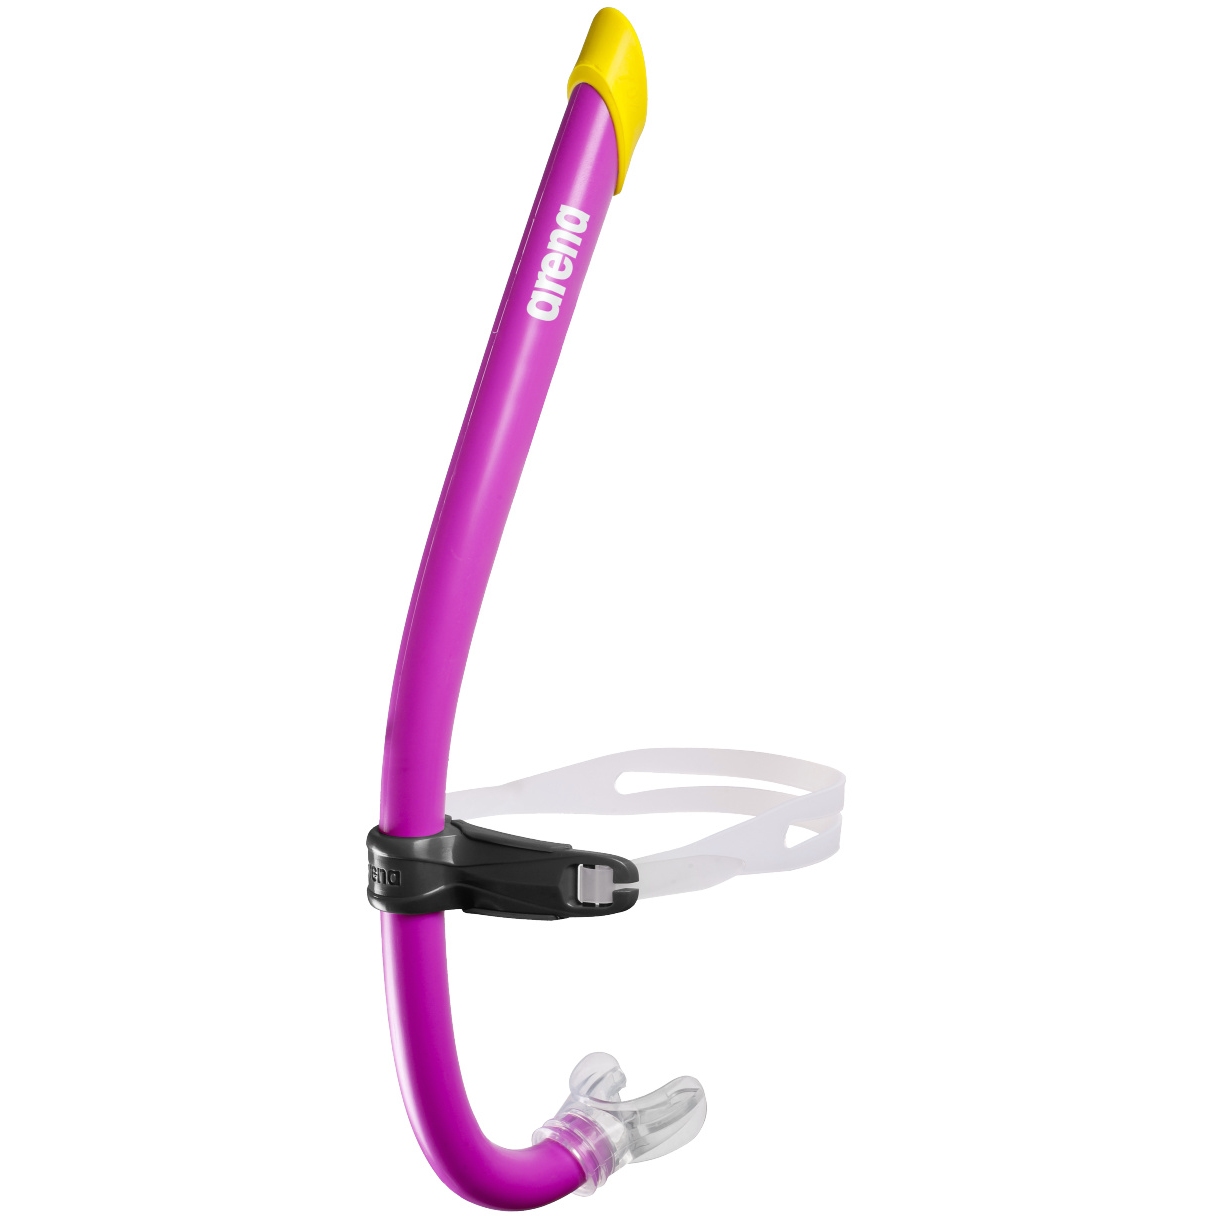 Produktbild von arena Swim Snorkel Pro III Schnorchel - Pink